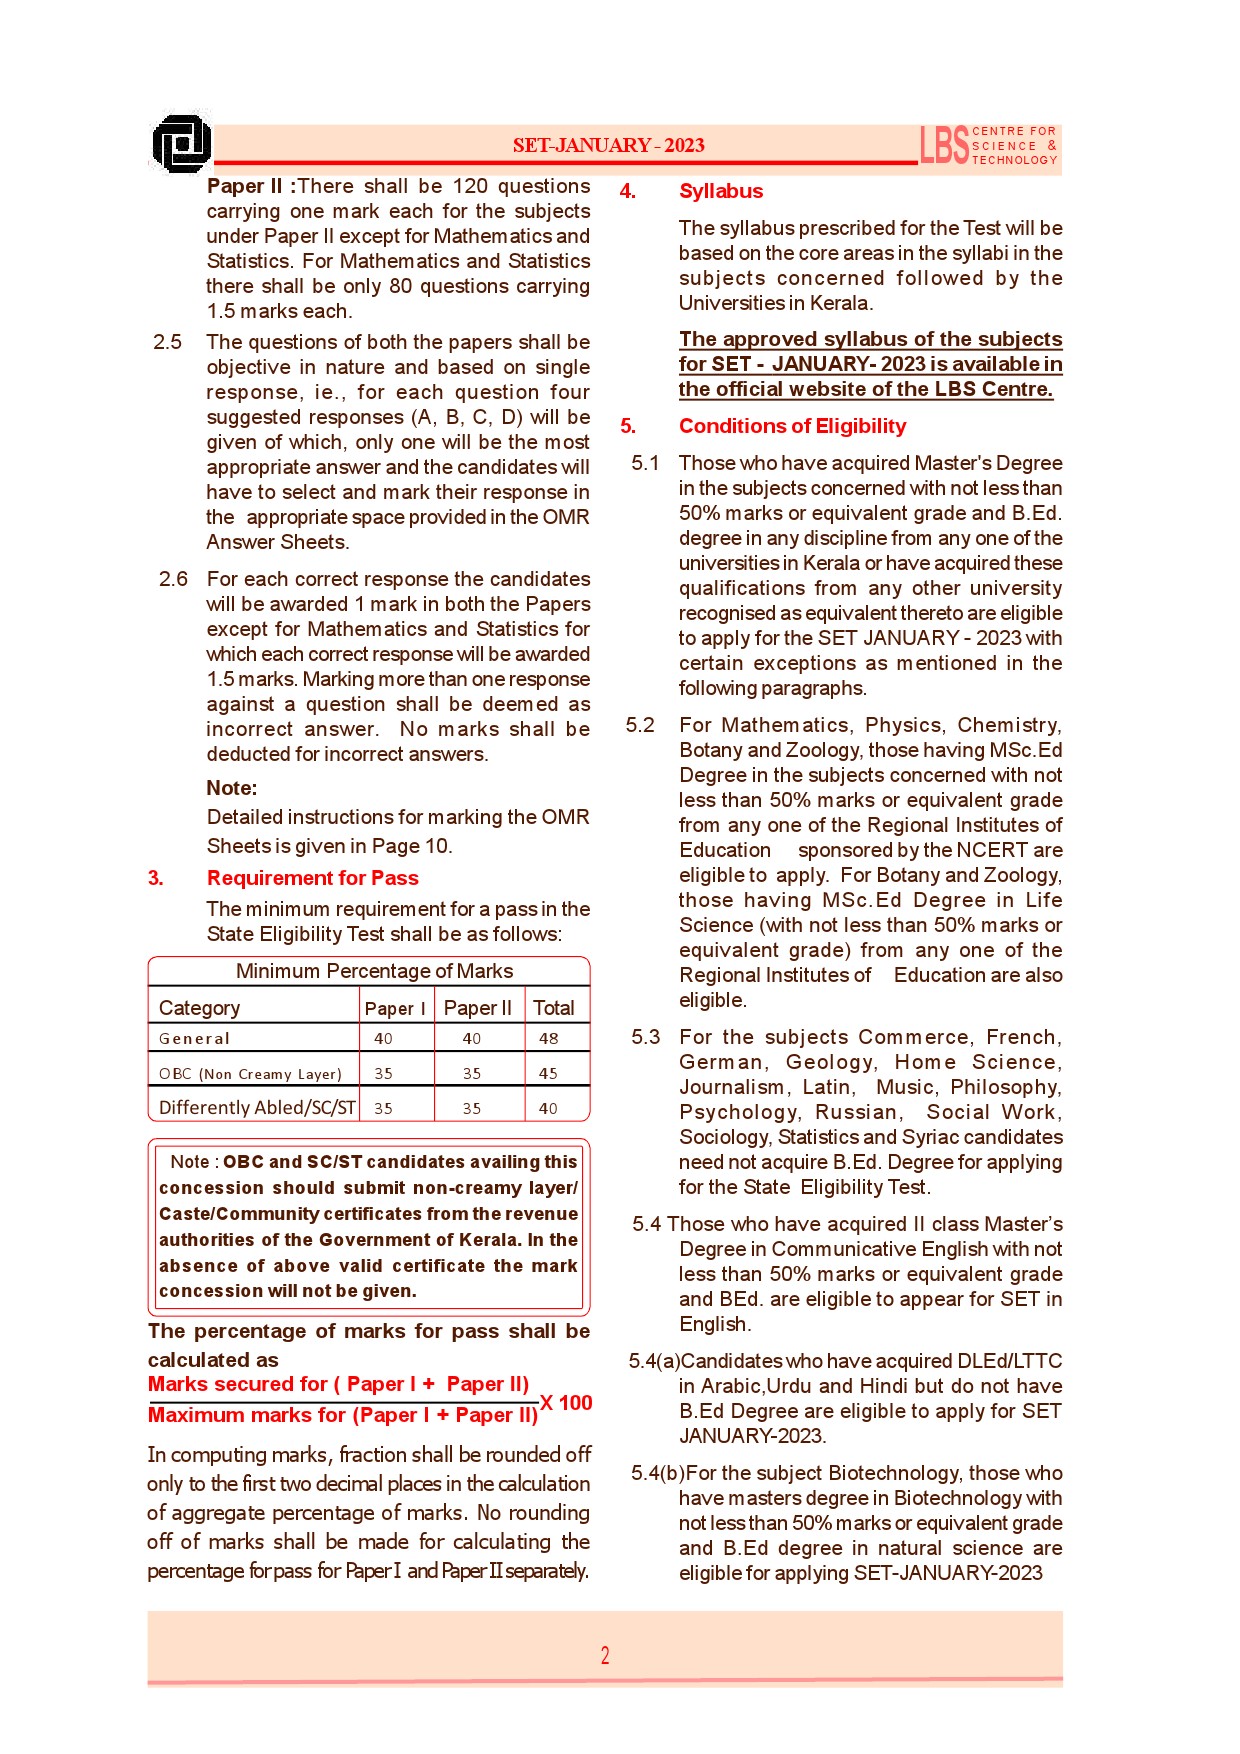 State Eligibility Test January 2023 Prospectus - Notification Image 4